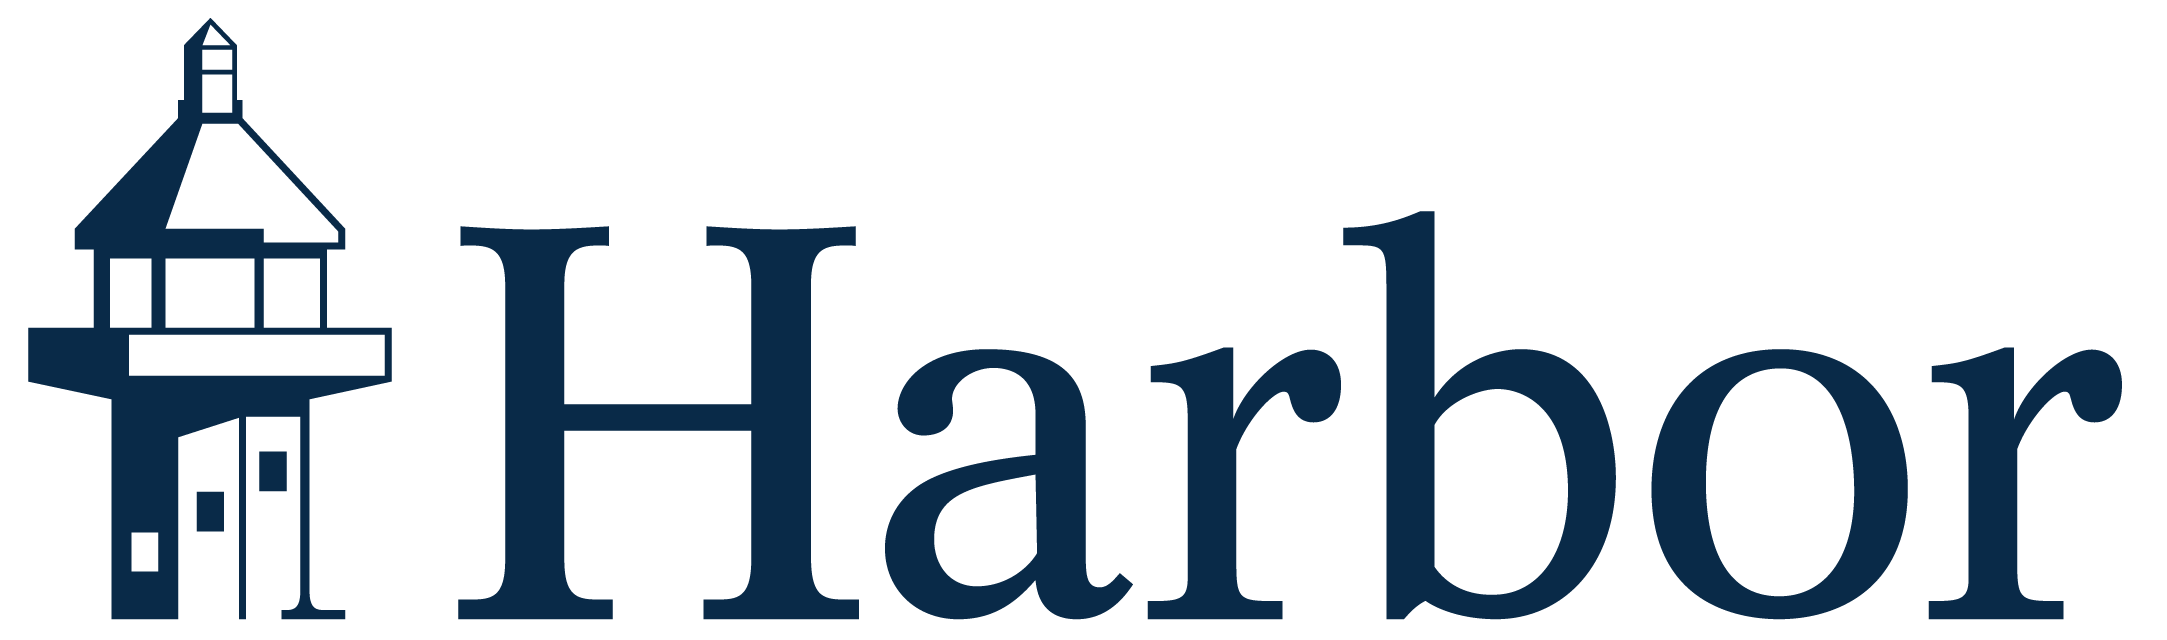 Harbor Capital Advisors, Inc. Company Logo